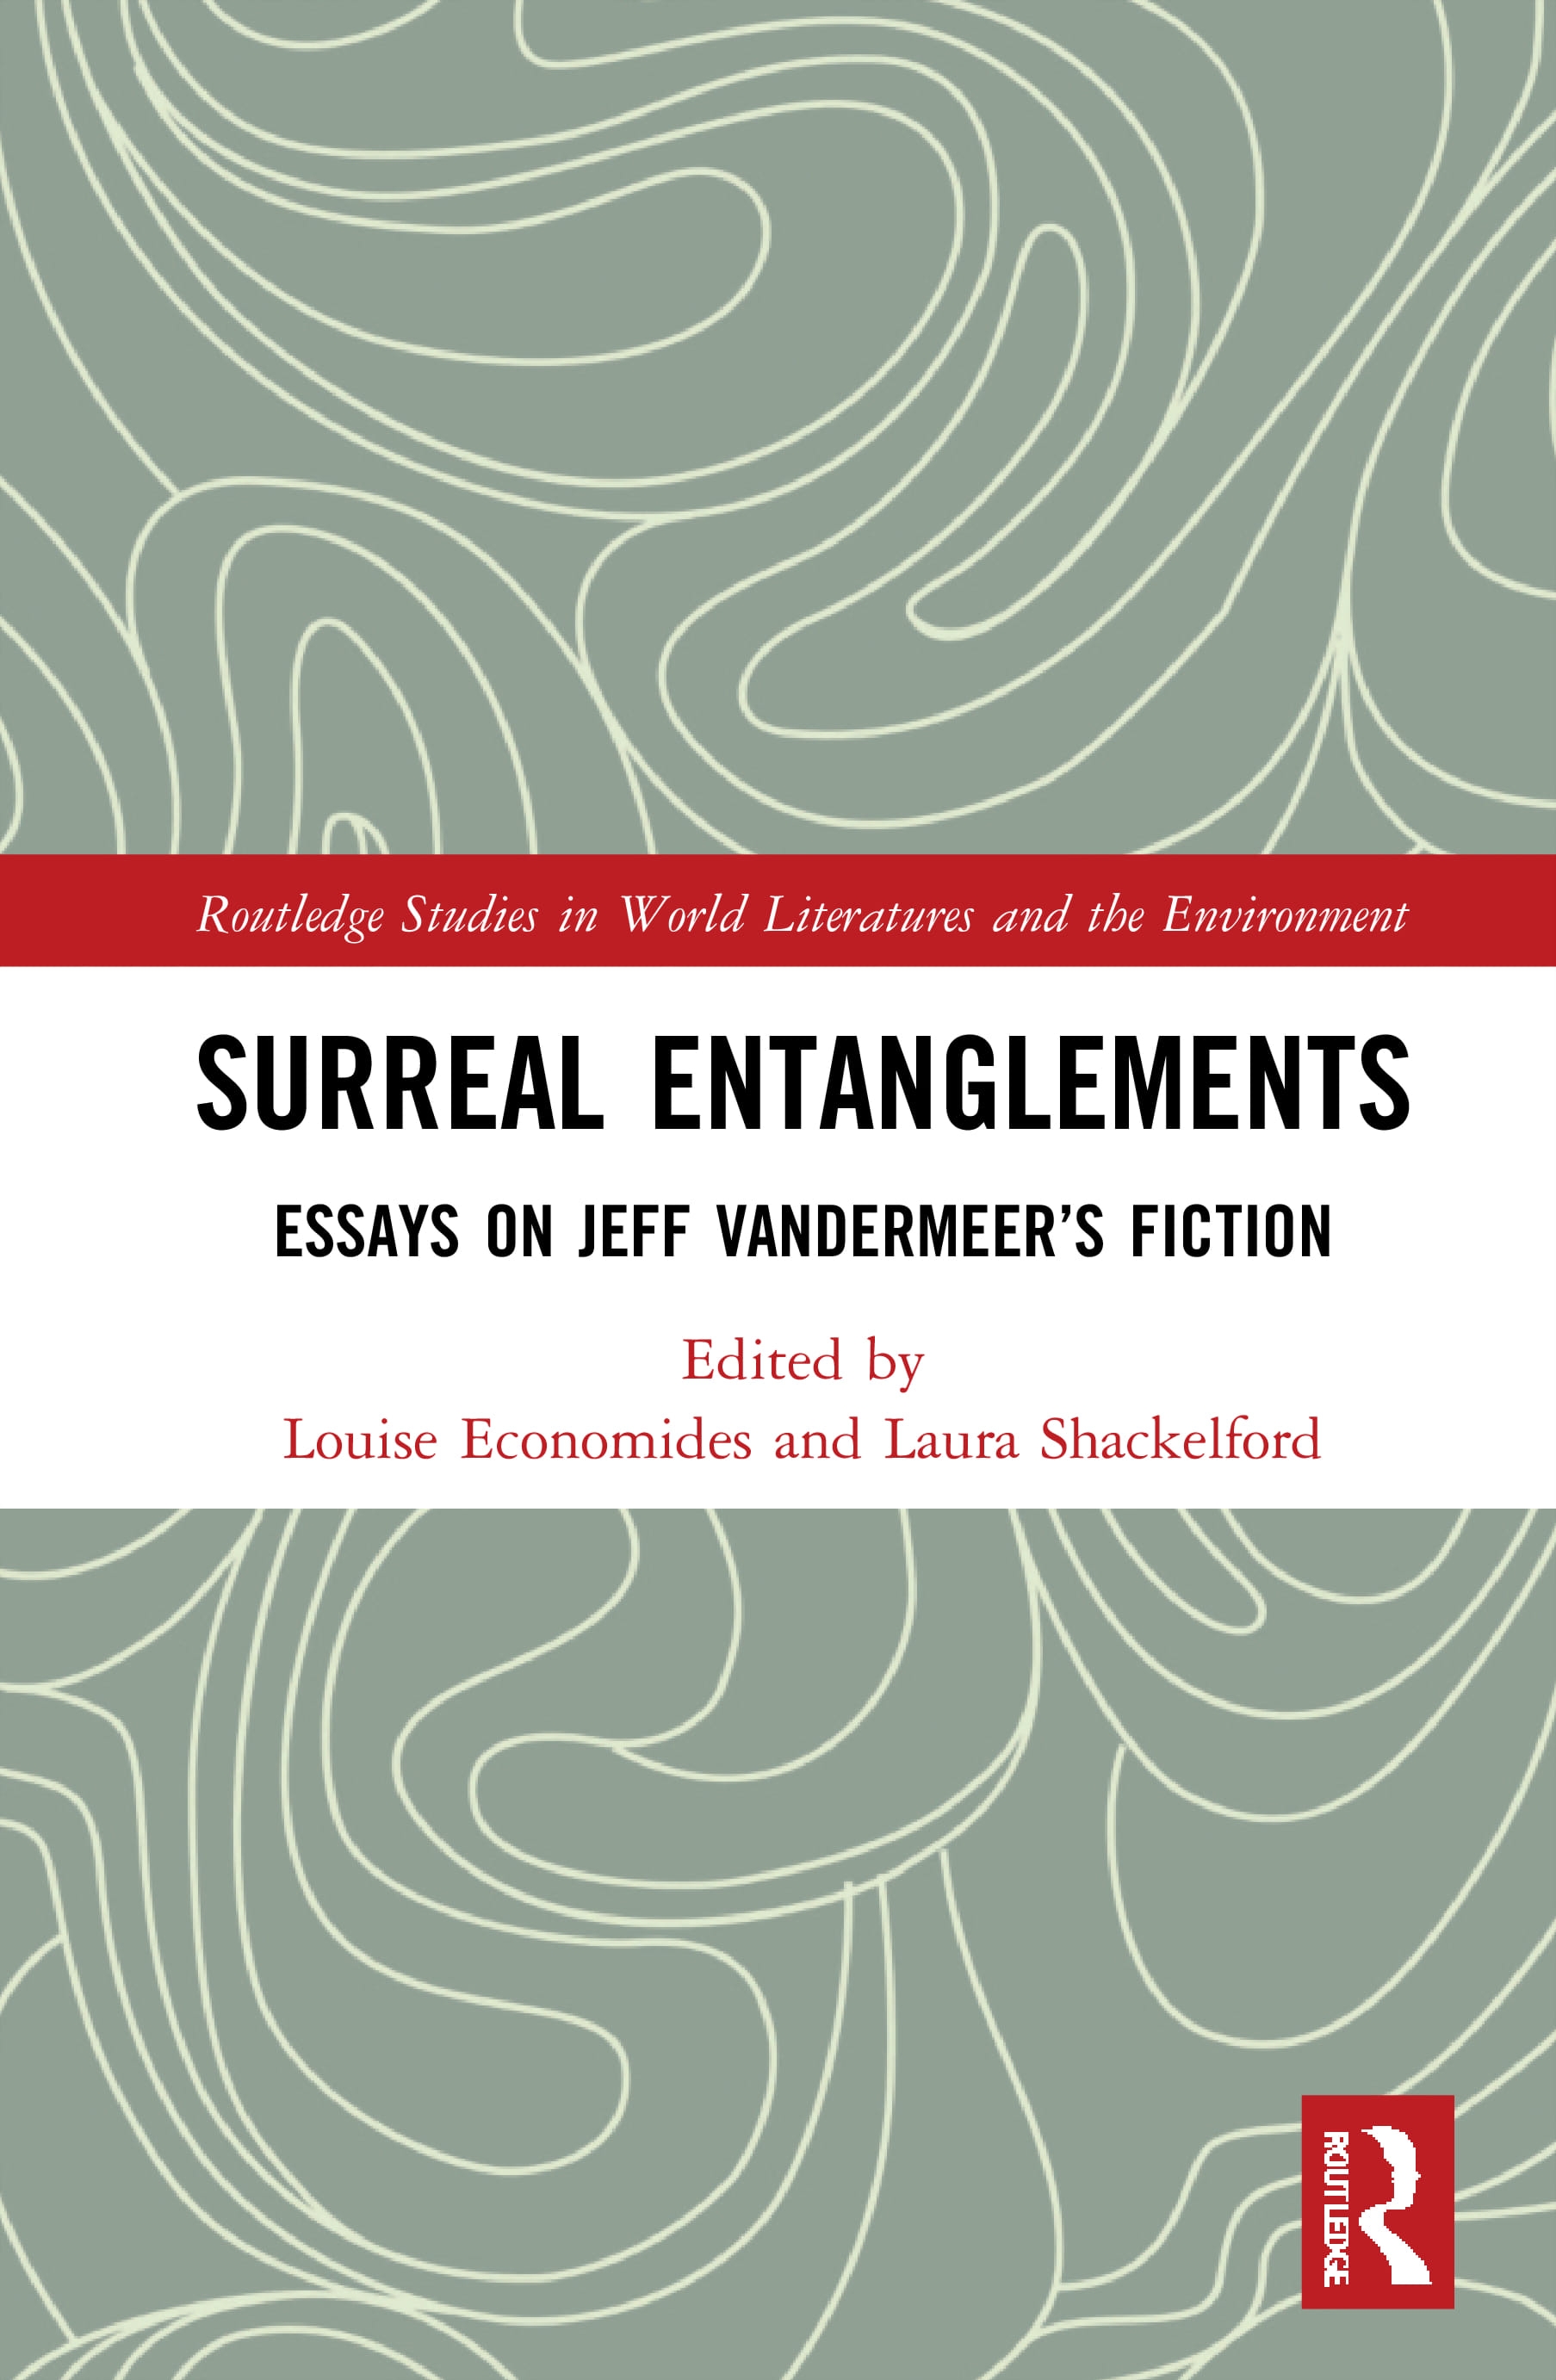 Surreal Entanglements: Essays on Jeff Vandermeer’s Fiction